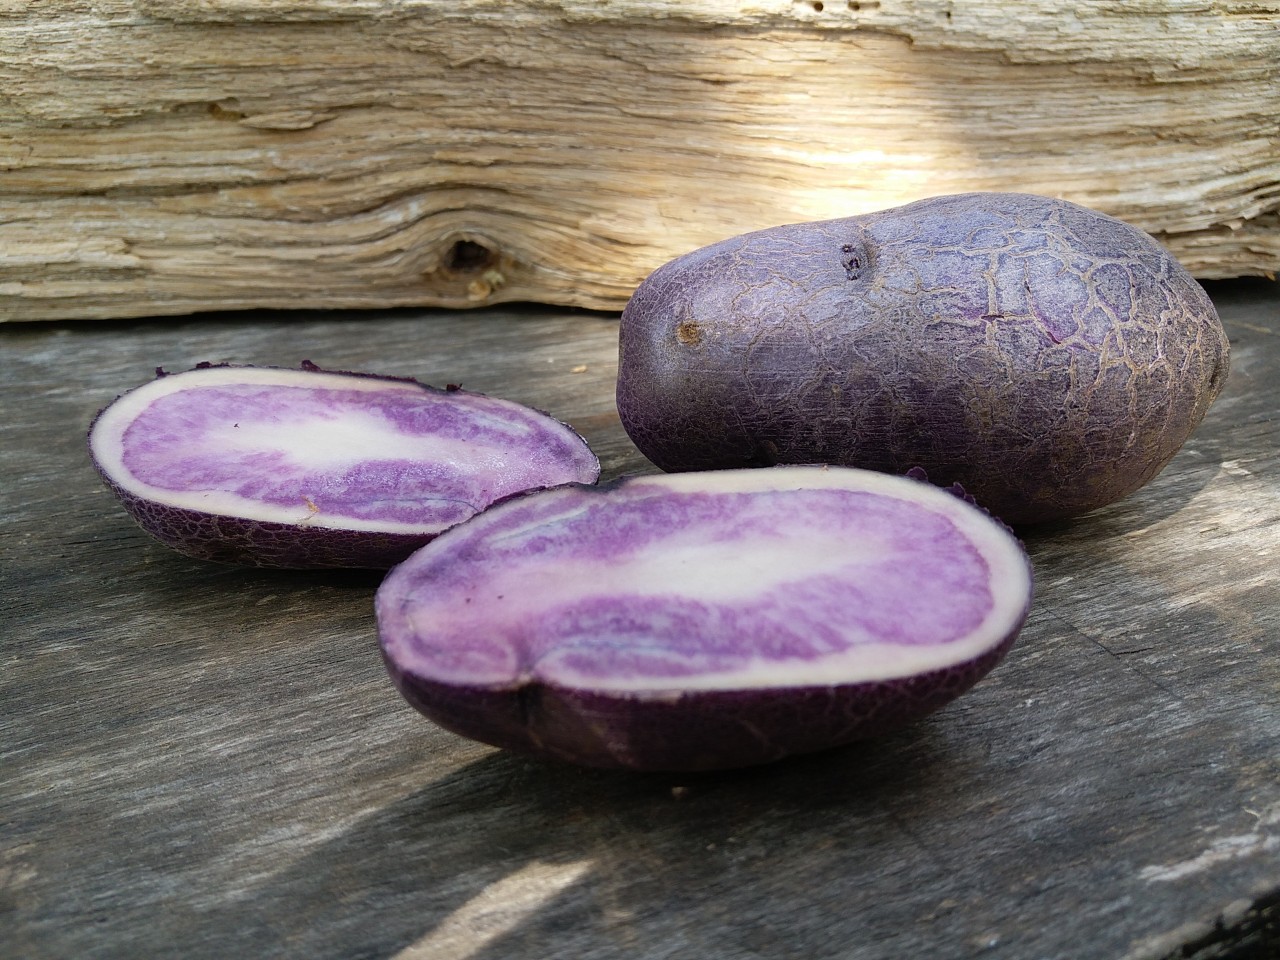 Фиолетовая картошка: описание и характеристики сортов, полезные свойства с фото